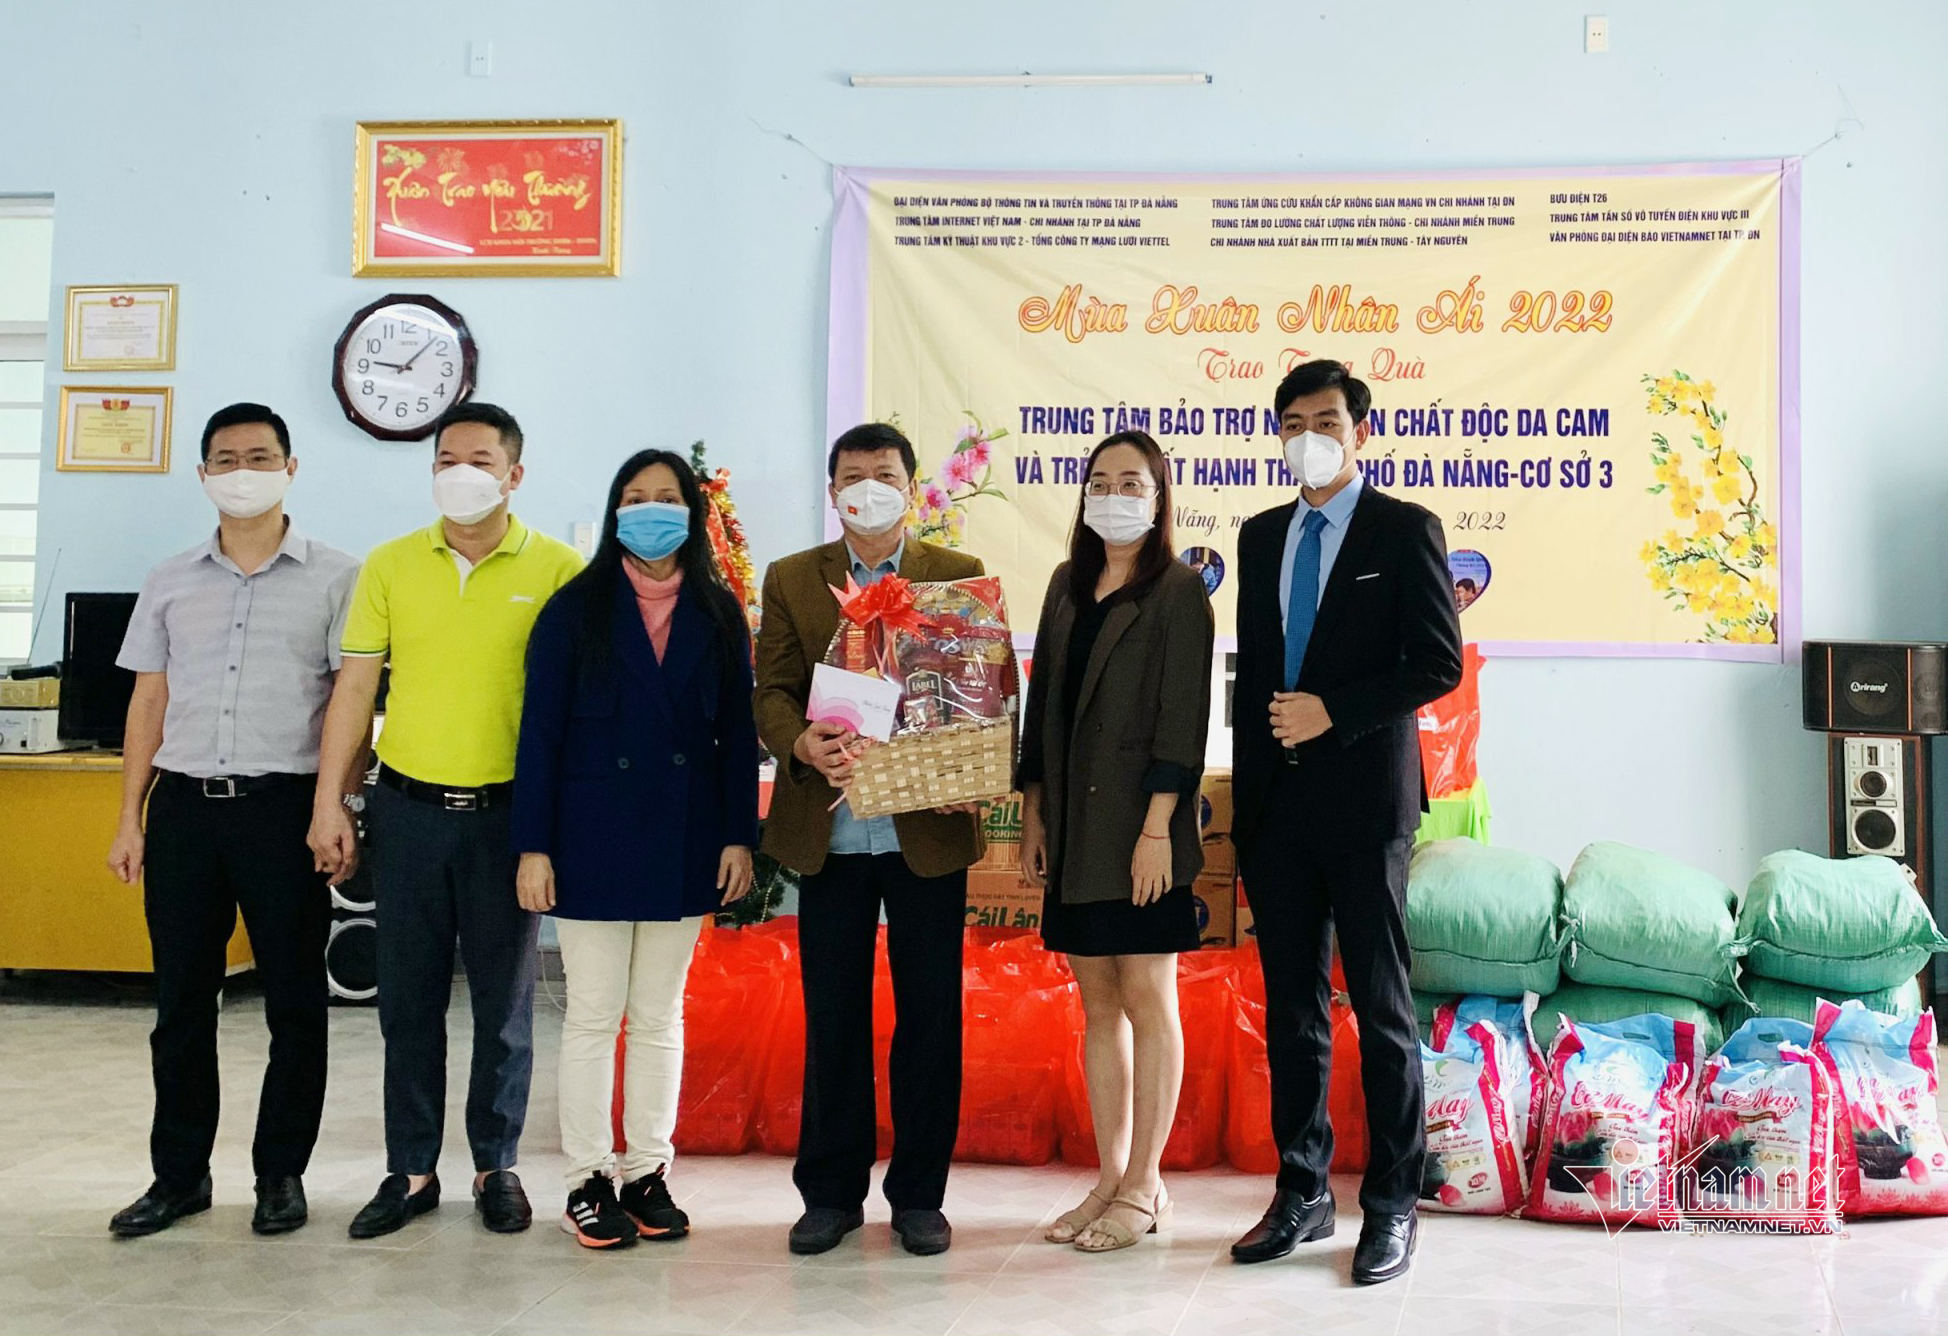 VietNamNet đồng hành mang 'mùa xuân nhân ái' đến trẻ em mồ côi, chất độc da cam